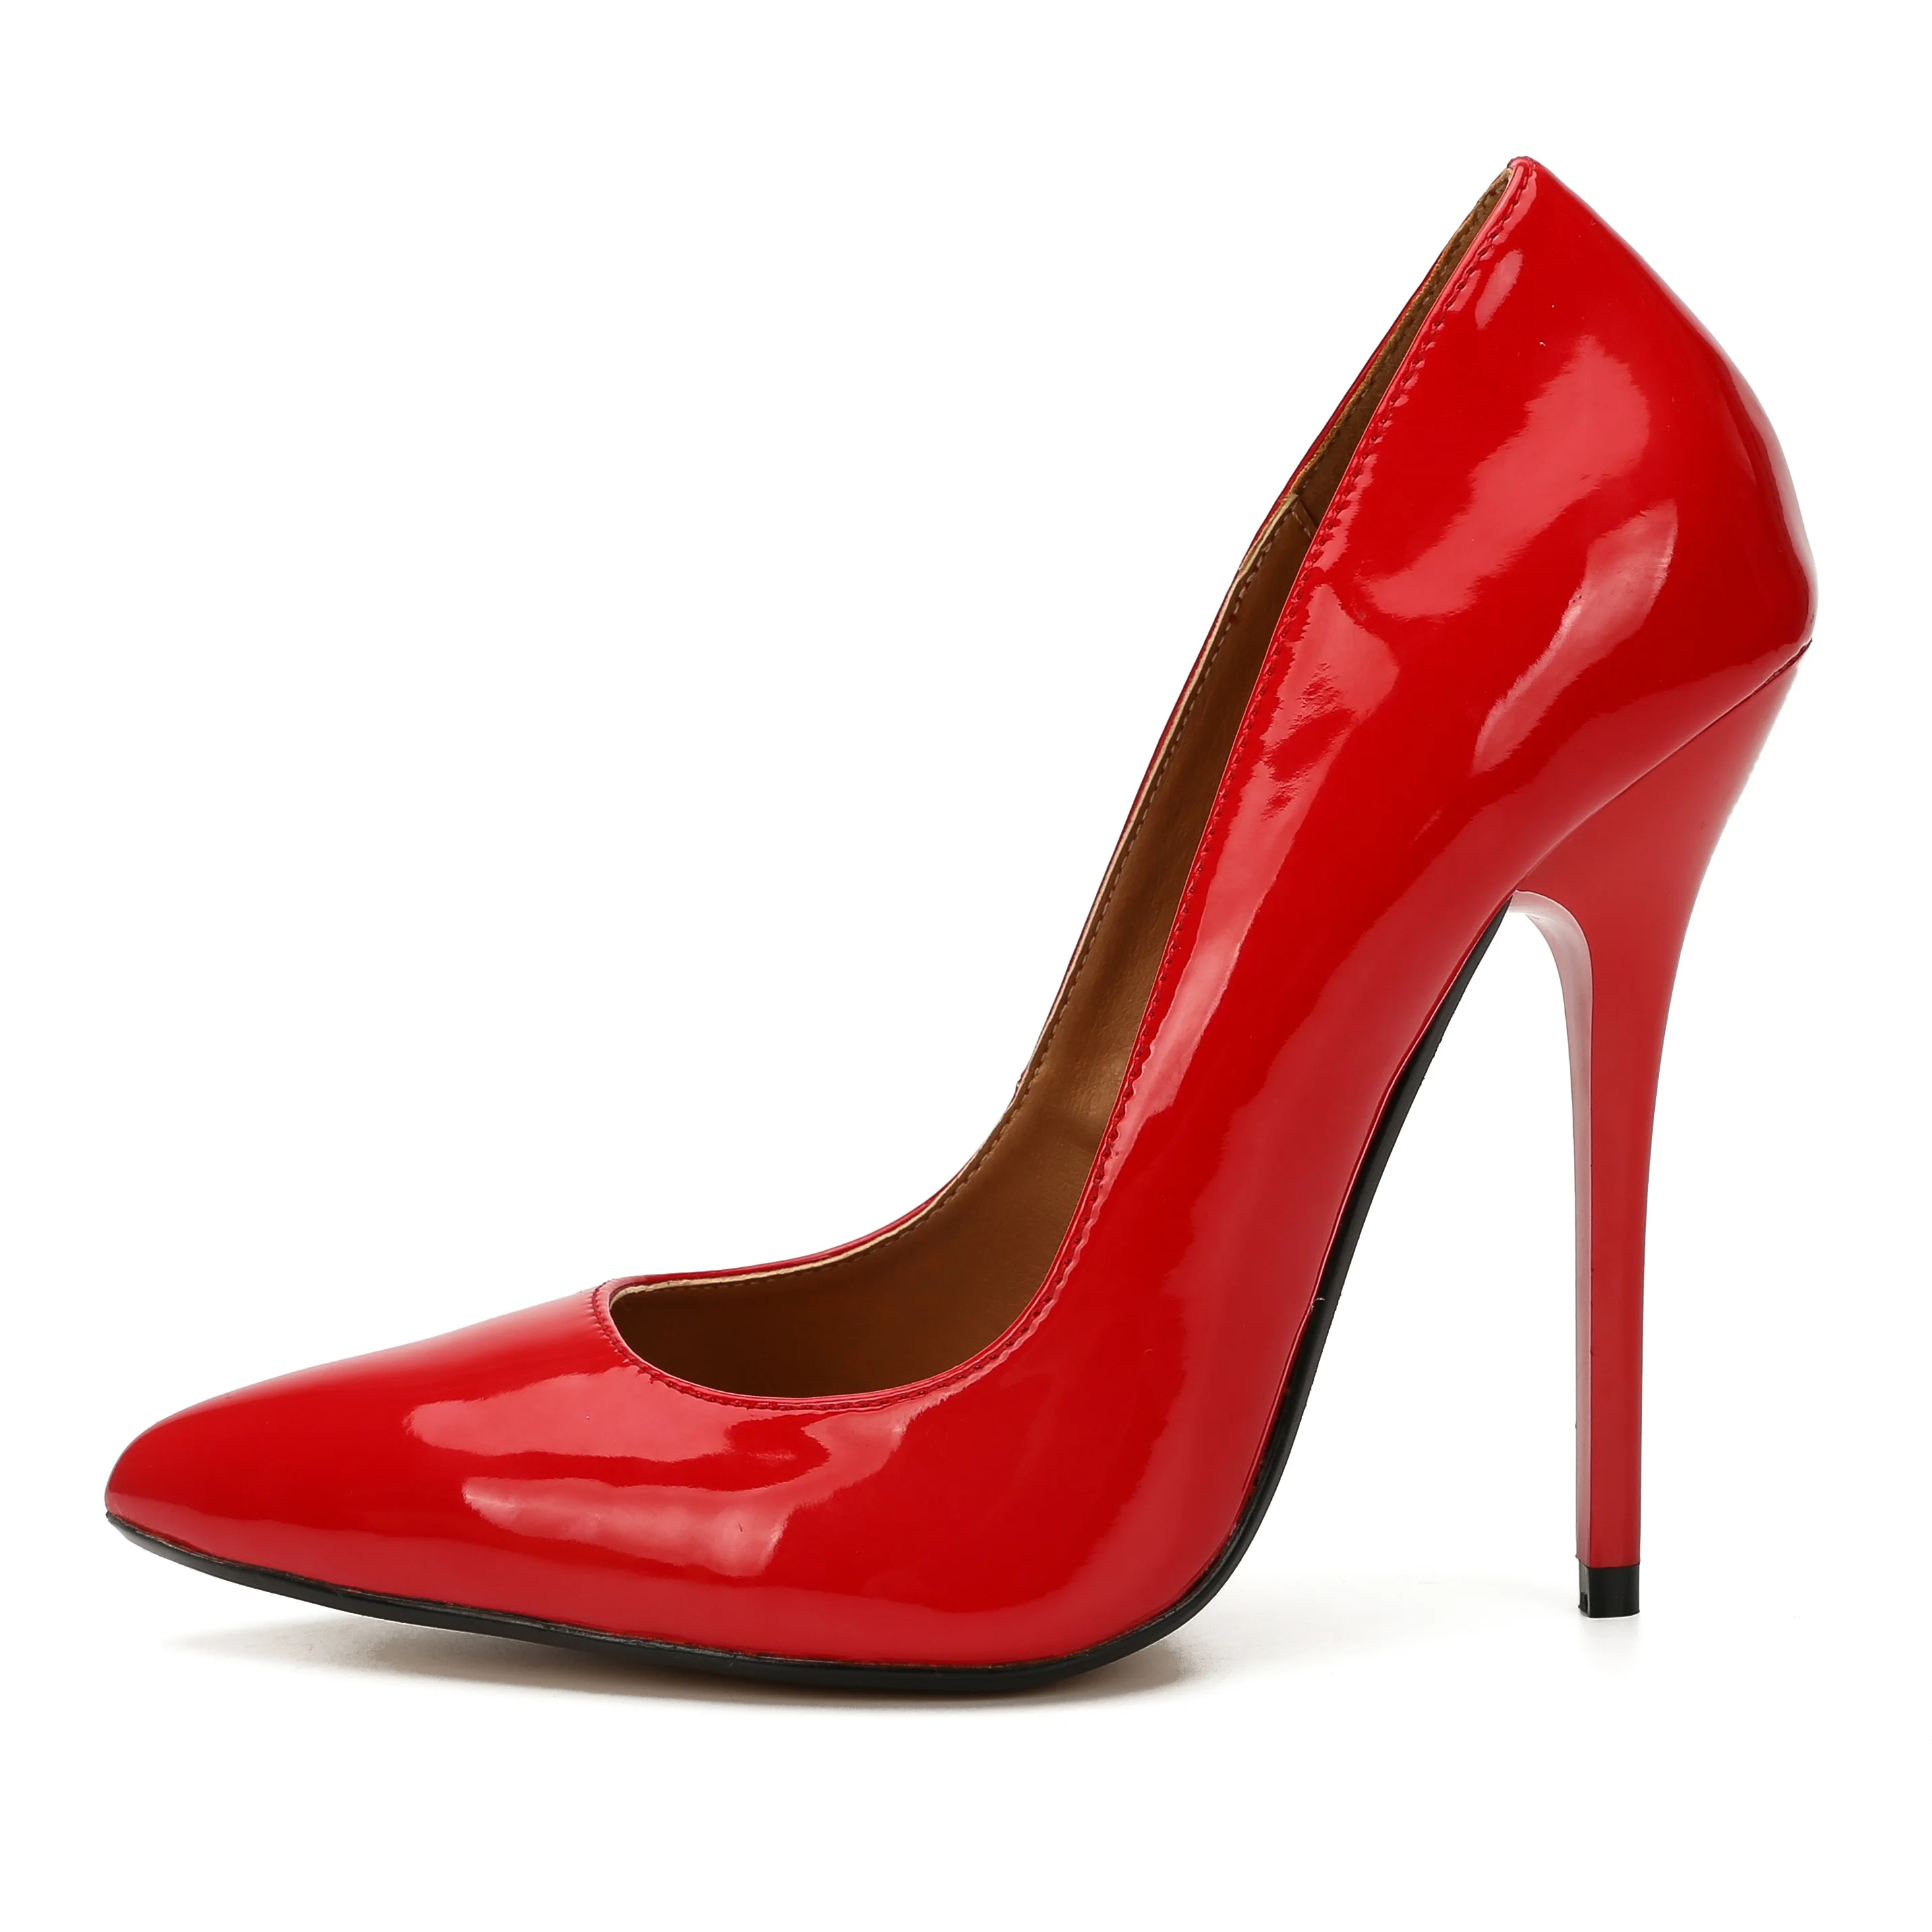 LLXF/Большие размеры: 40-45, 46, 47, 48, 49; стиль; женские красные модельные туфли на тонком металлическом каблуке 14 см; кожаные туфли-лодочки с острым носком для костюмированной вечеринки - Цвет: Red A